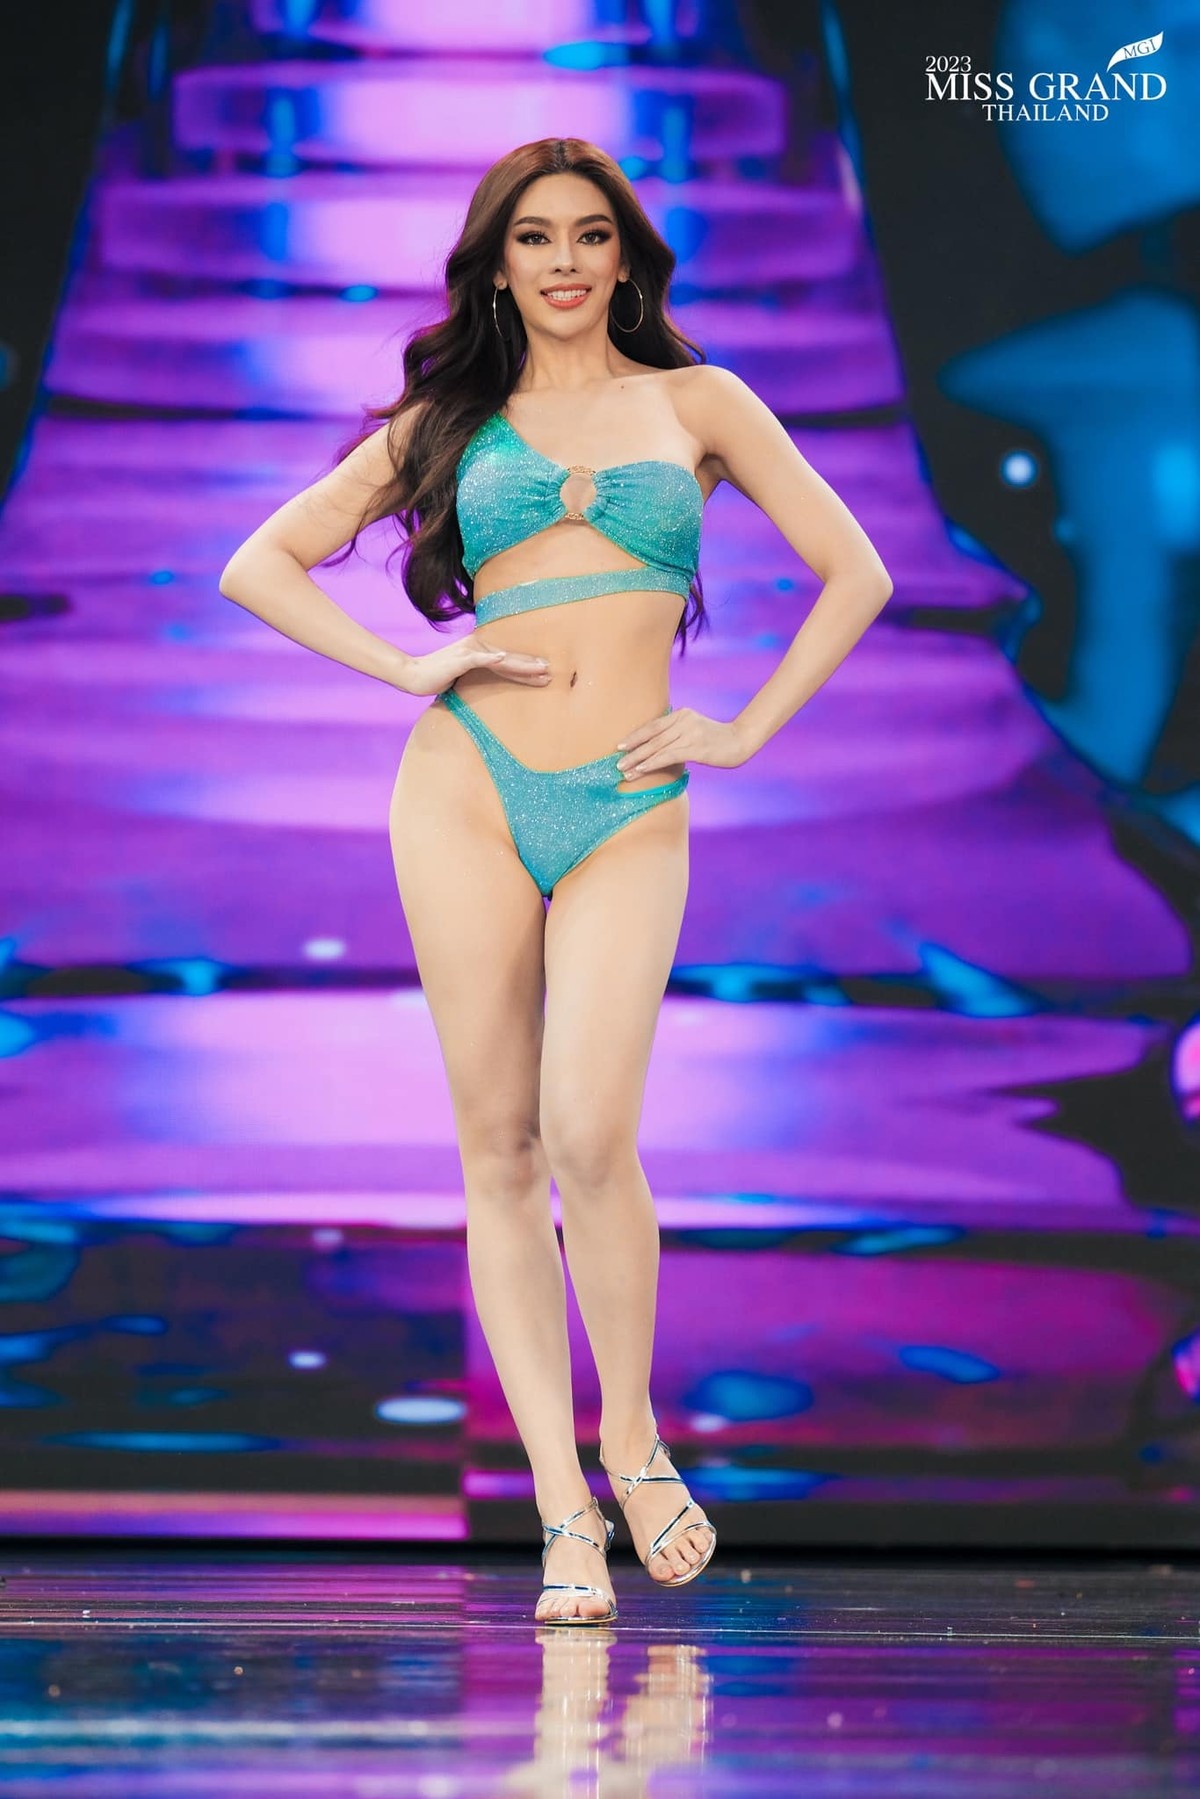 Nhan sắc xinh đẹp đầy mê hoặc của mỹ nhân gốc Việt cao 1,7m trước chung kết Miss Grand Thailand 2023 - Ảnh 7.